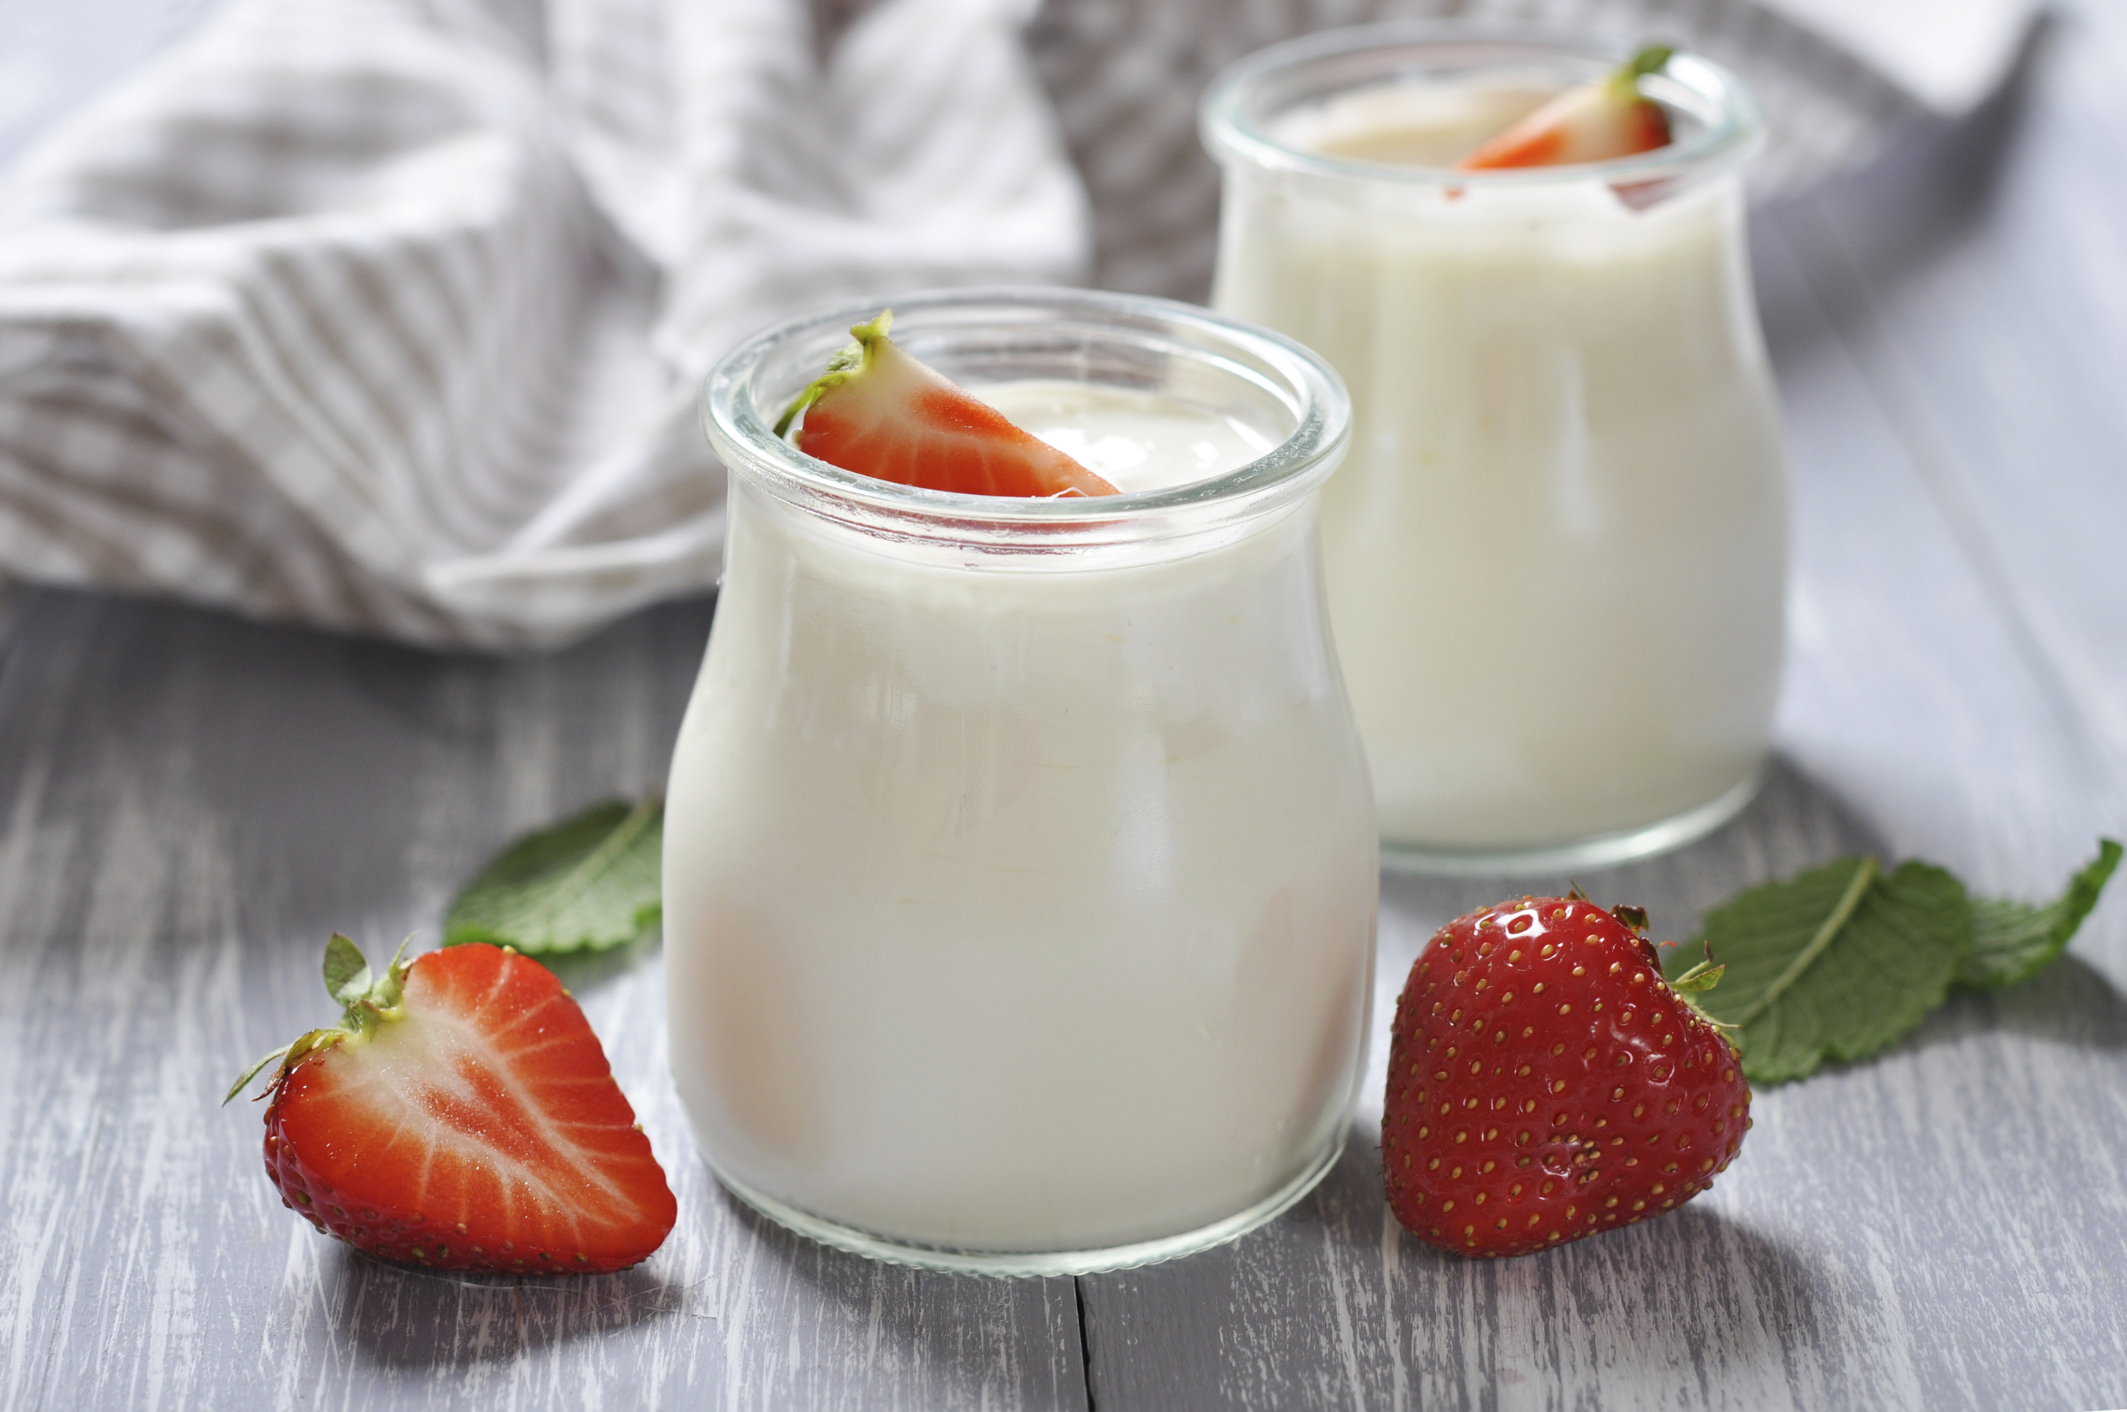 Nghiên cứu cho thấy sữa chua có thể bảo vệ và chống lại các bệnh về nướu.